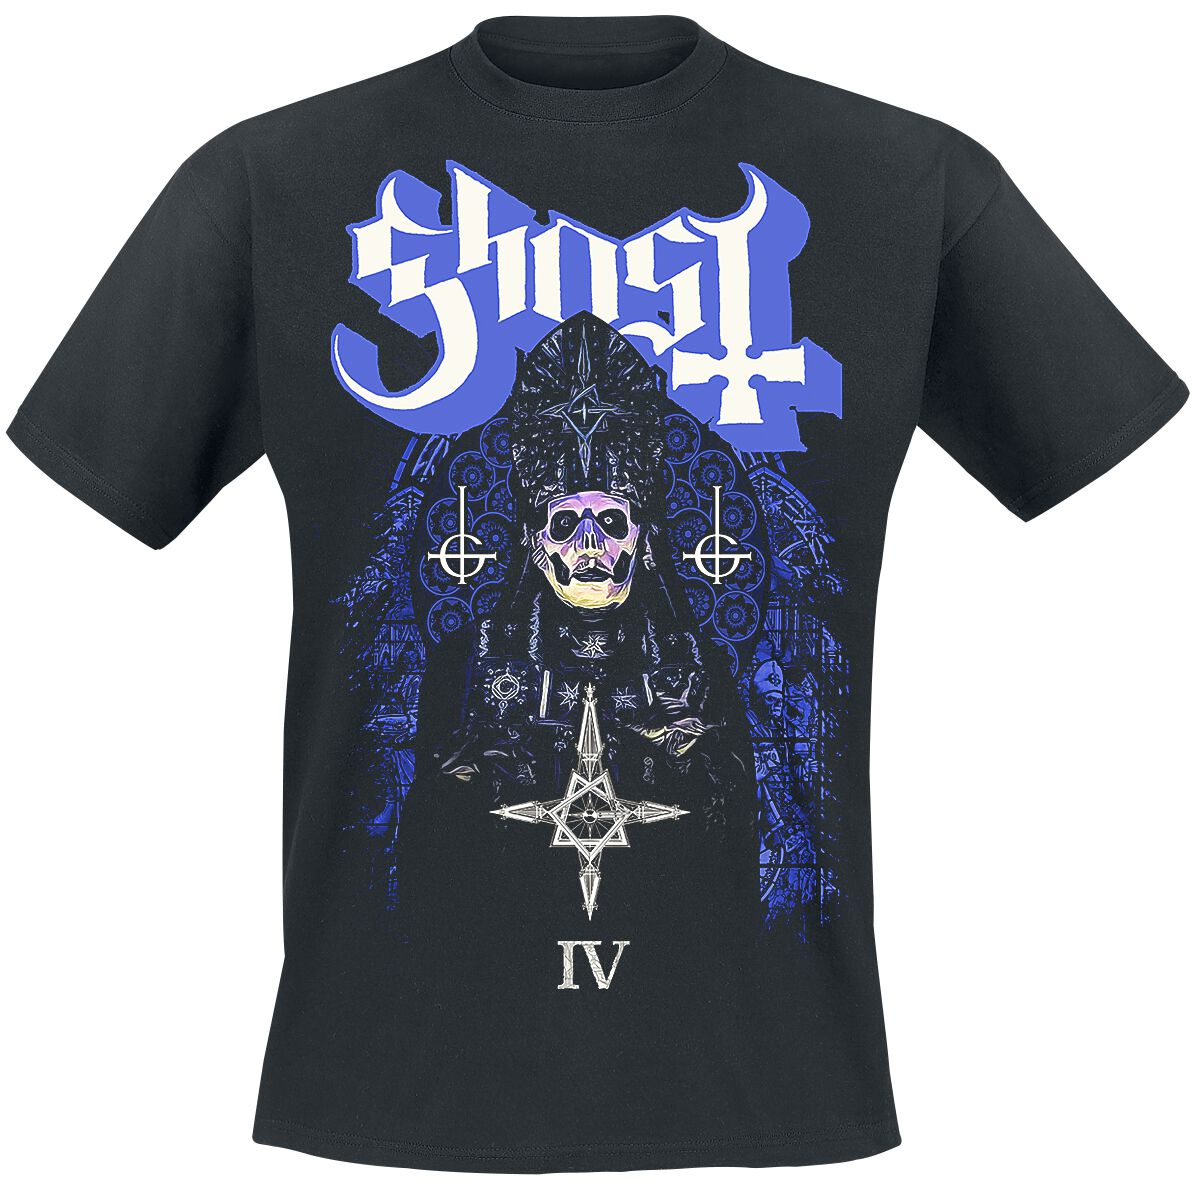 Ghost T-Shirt - Stained Glass IV - S bis 4XL - für Männer - Größe 3XL - schwarz  - Lizenziertes Merchandise!